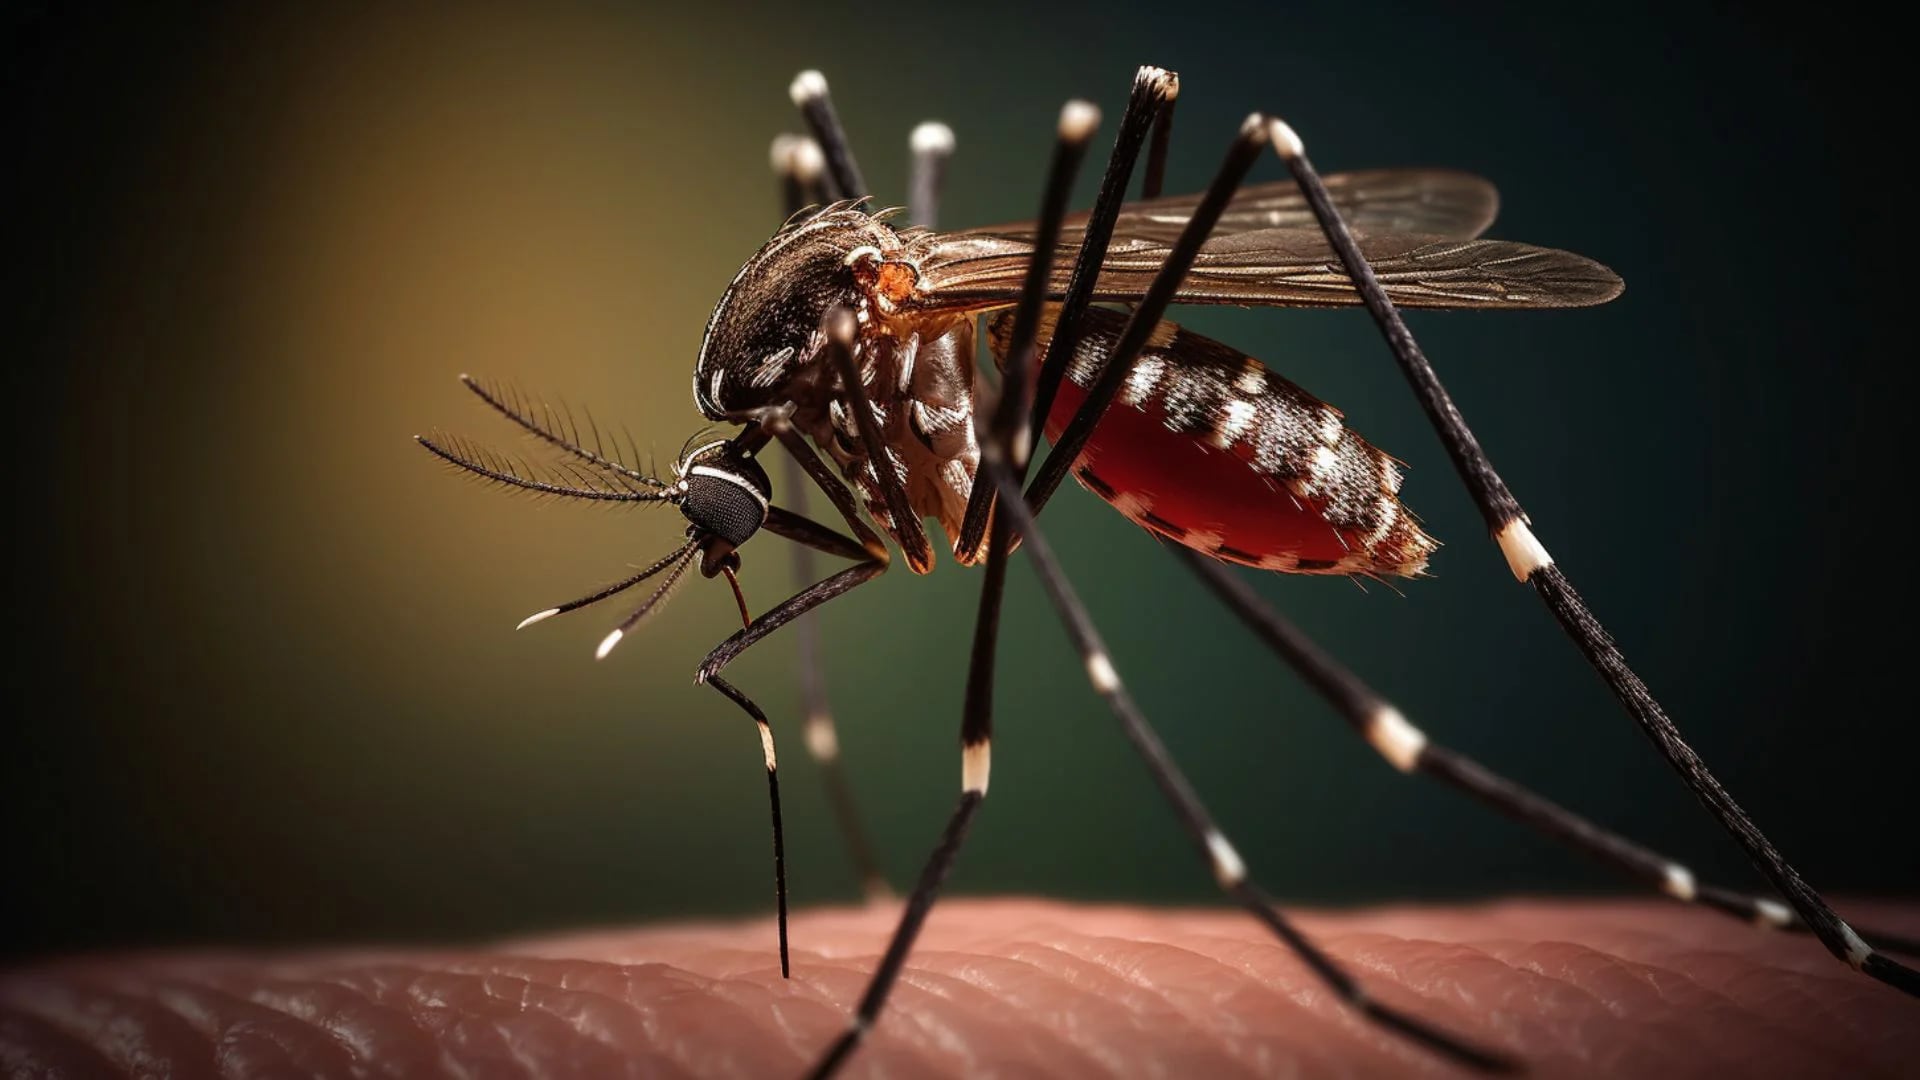 Fotografía en detalle del mosquito del dengue, Aedes aegypti picando un brazo. Salud, salubridad, higiene, control, plagas, verano, agua, sudamérica (Imagen ilustrativa Infobae)